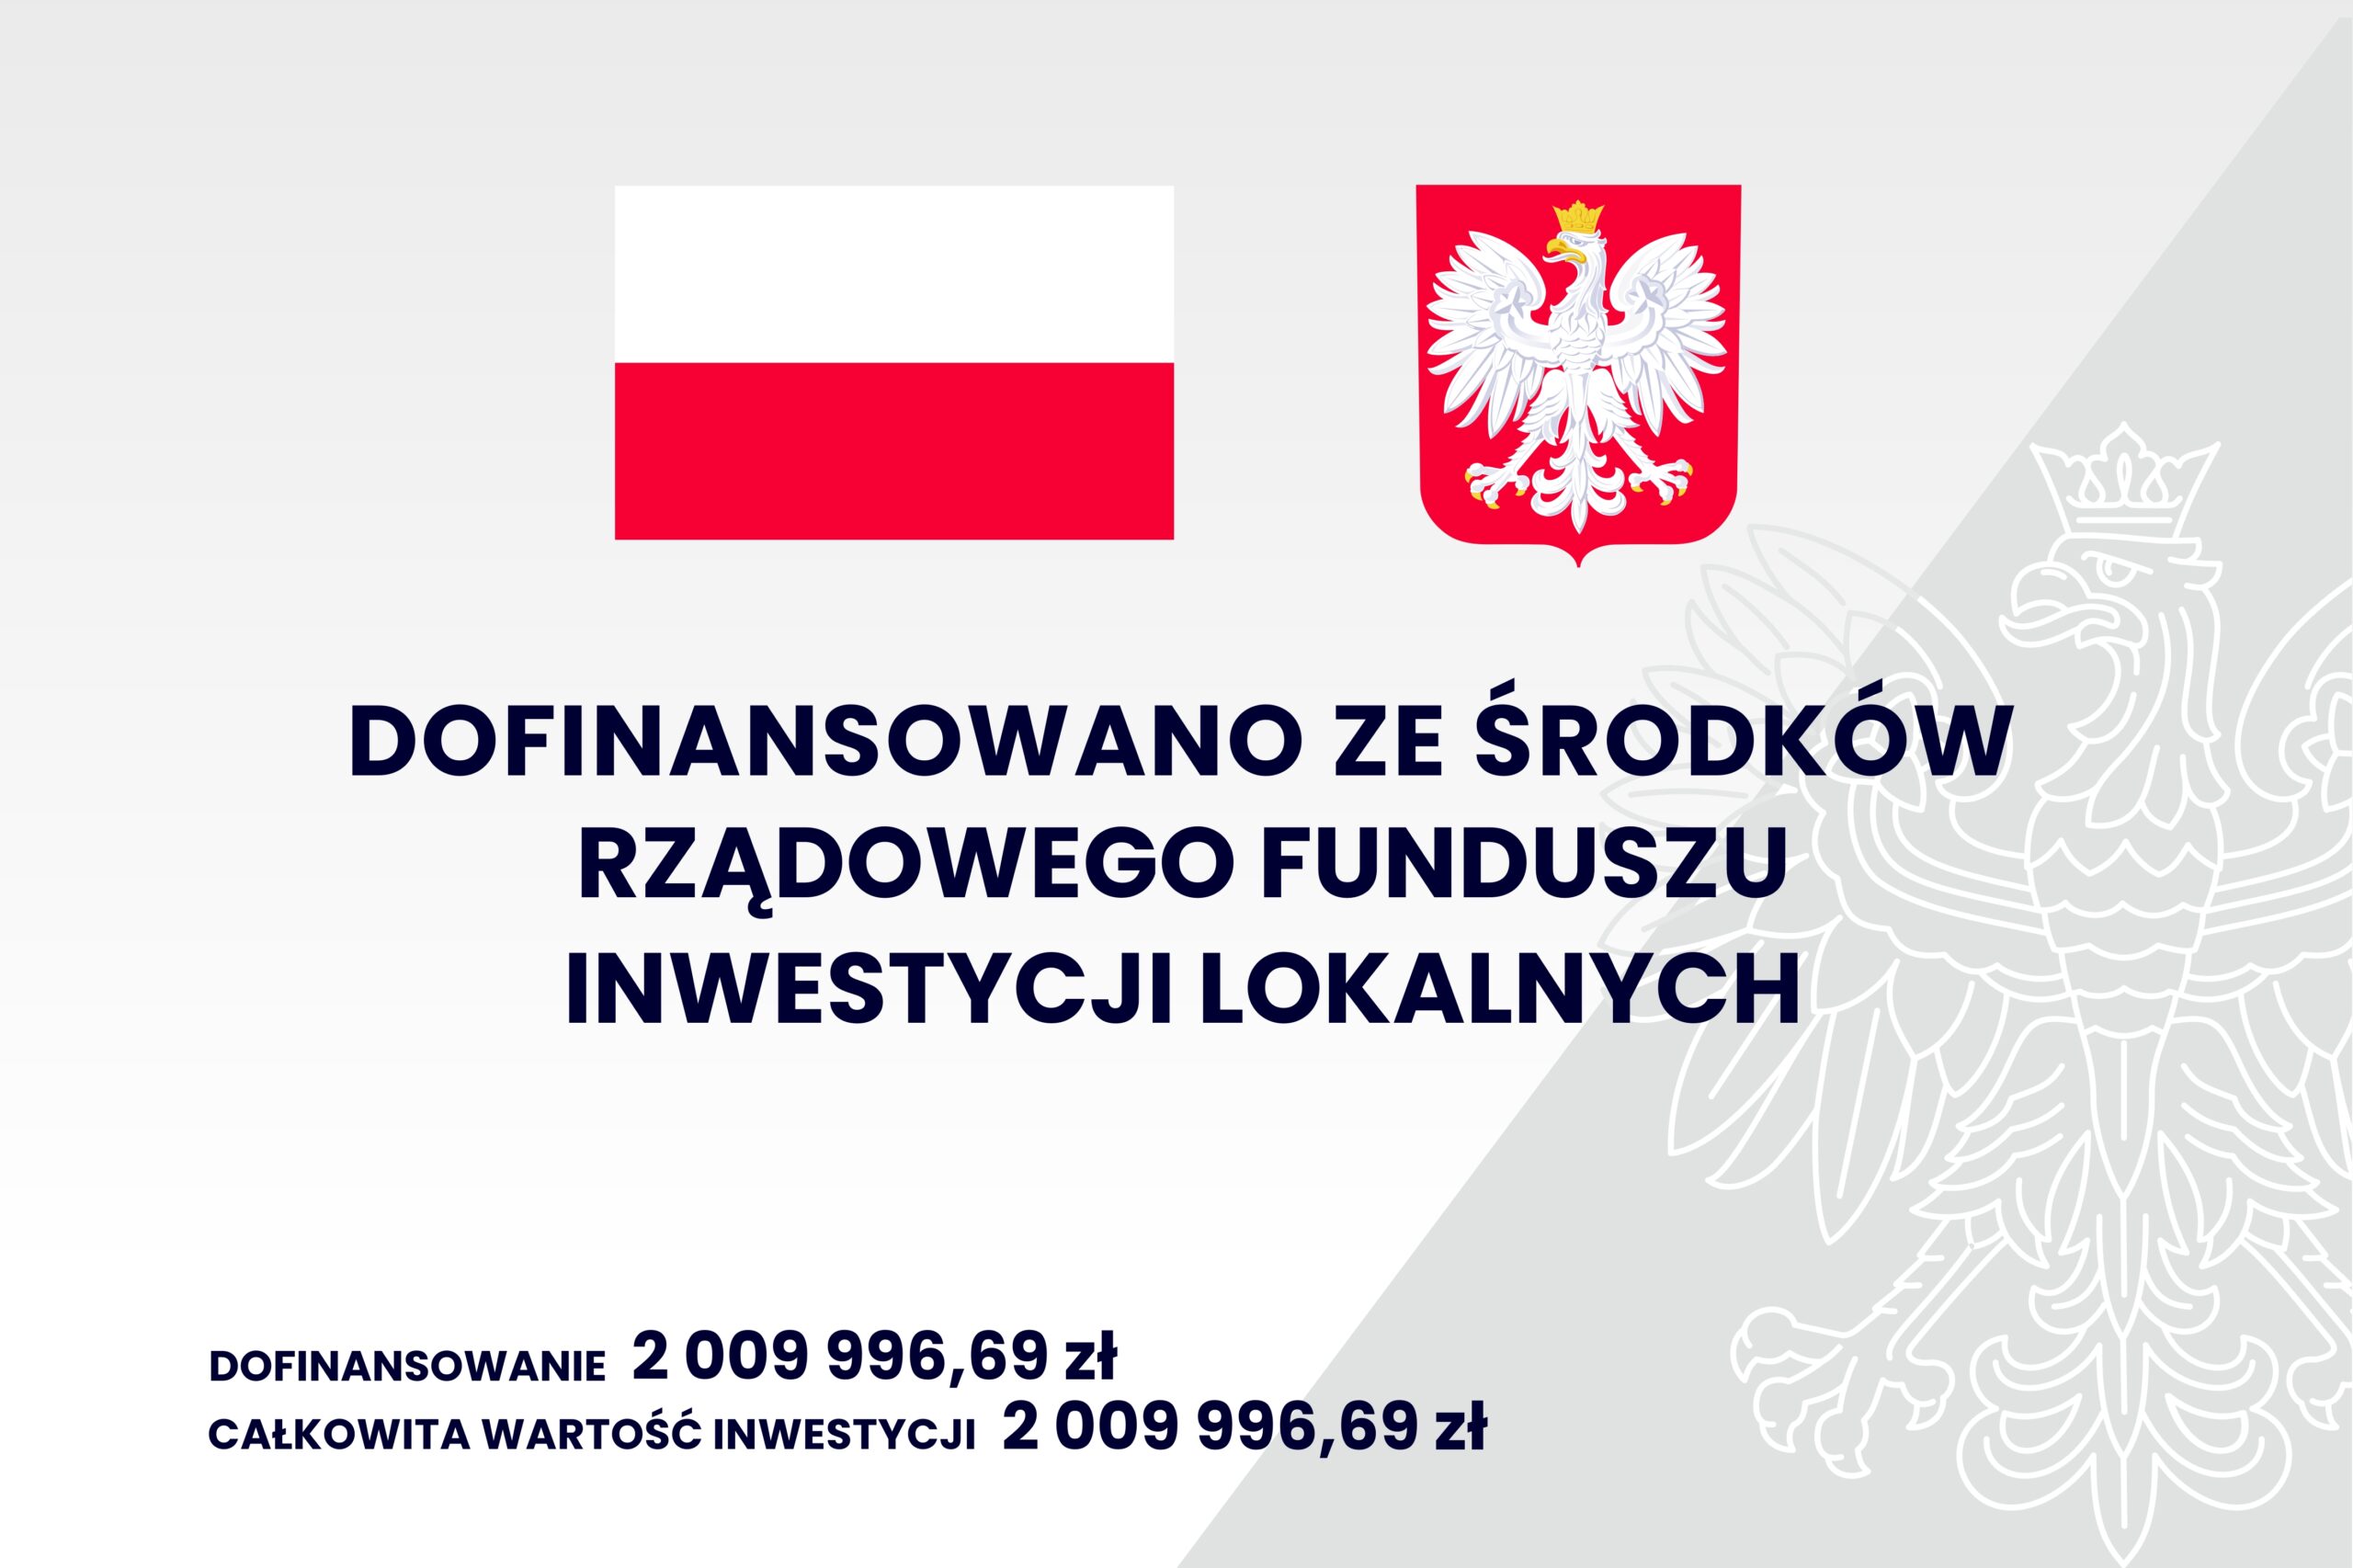 Grafika przedstawia informacje: dofinansowano ze środków rządowego funduszu inwestycji lokalnych; dofinansowanie - 2 009 996,69 zł; całkowita wartość inwestycji - 2 009 996,69 zł; na górze jest flaga i godło Polski